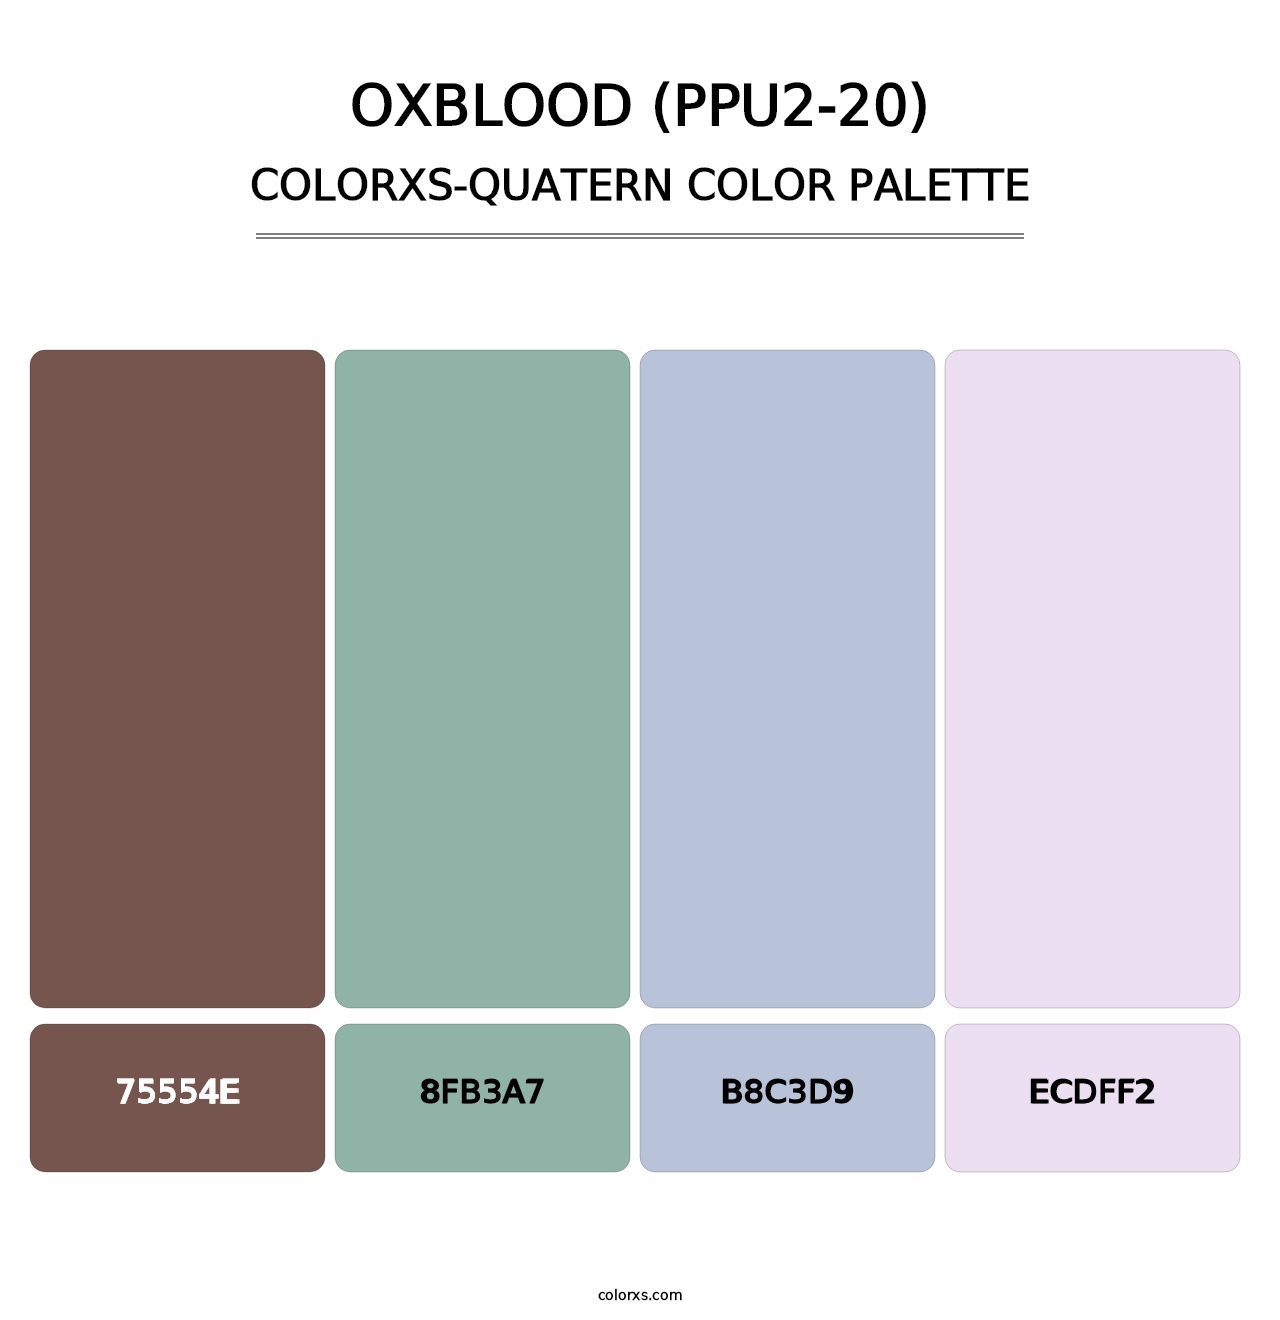 Oxblood (PPU2-20) - Colorxs Quatern Palette